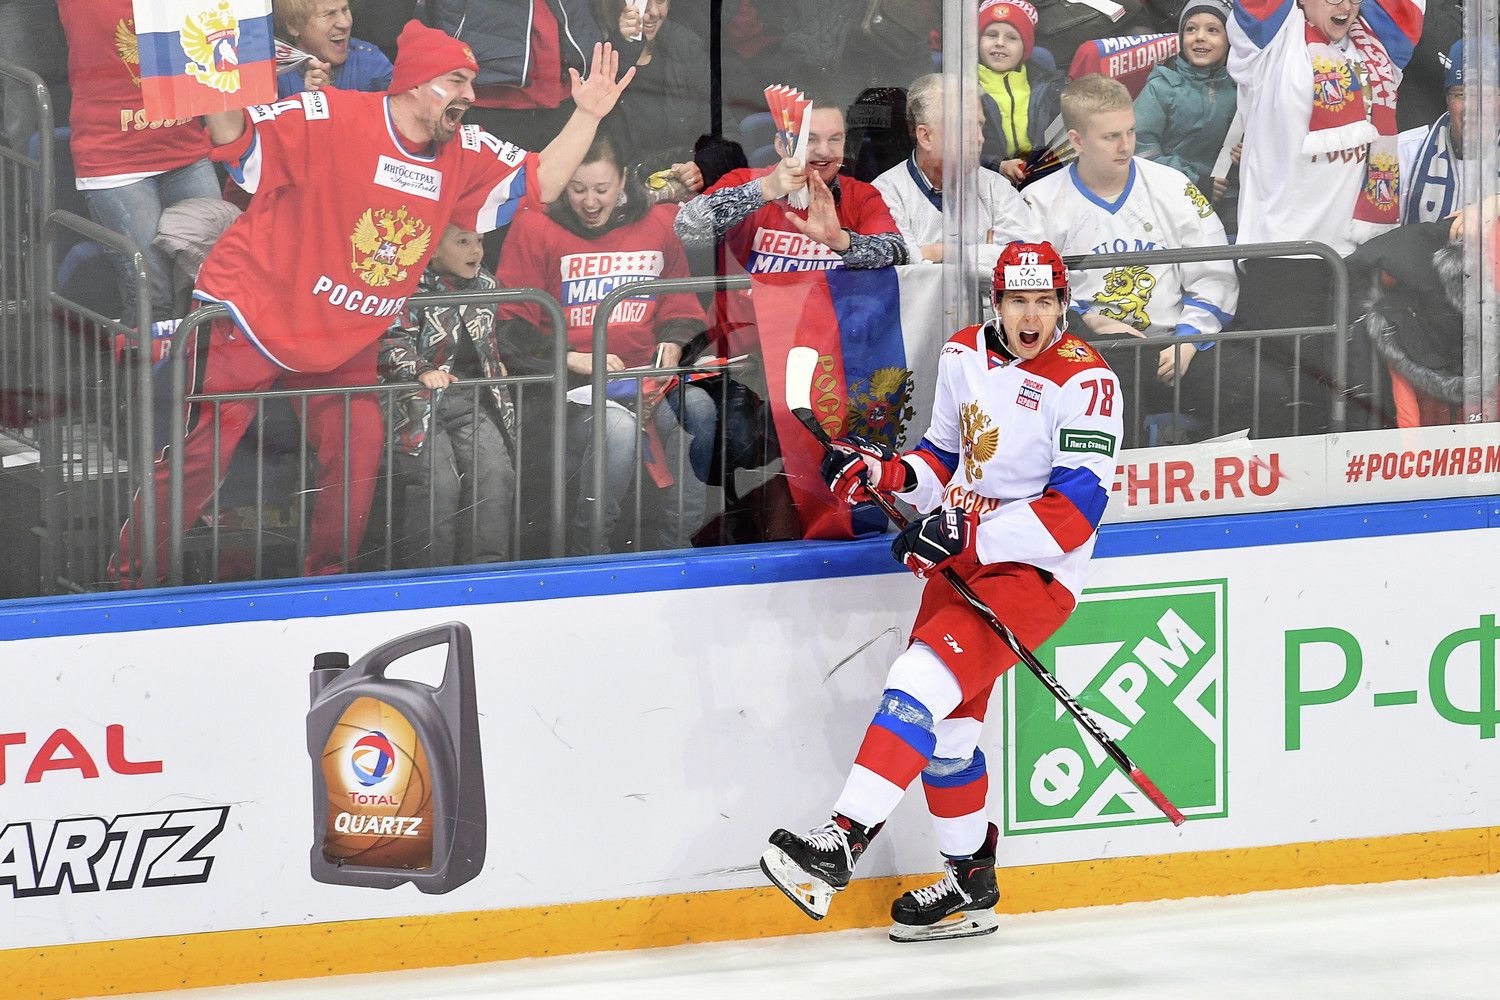 Максим Шалунов станет лучшим бомбардиром сборной России: прогноз и ставка на чемпионат мира по хоккею 2021